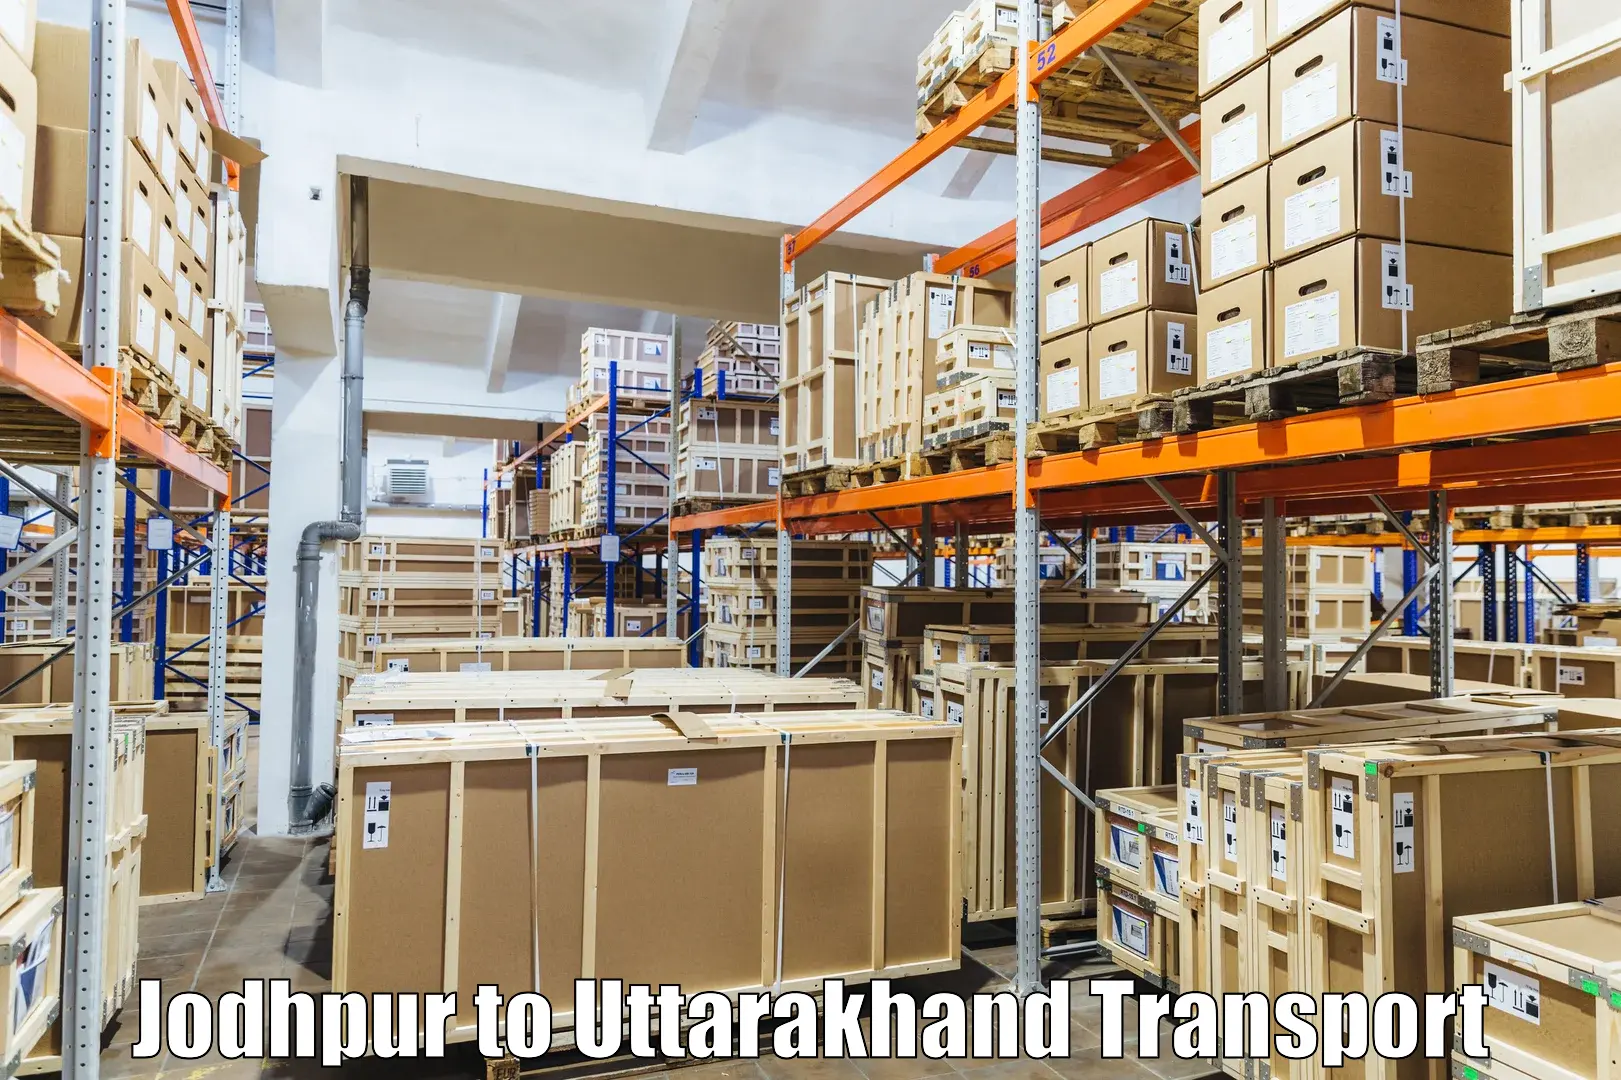 Two wheeler parcel service Jodhpur to Uttarakhand